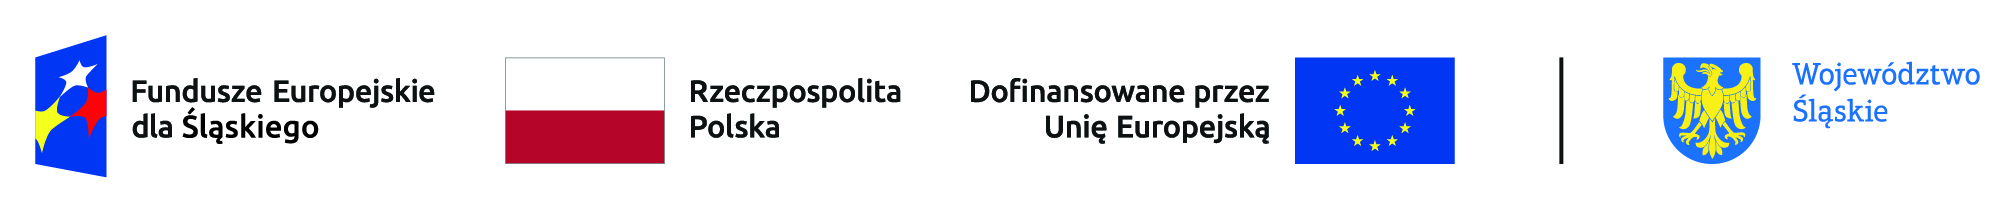 Fundusze Europejskie dla Śląskiego, Rzeczpospolita Polska, Dofinansowane przez Unię Europejską, Województwo Śląskie